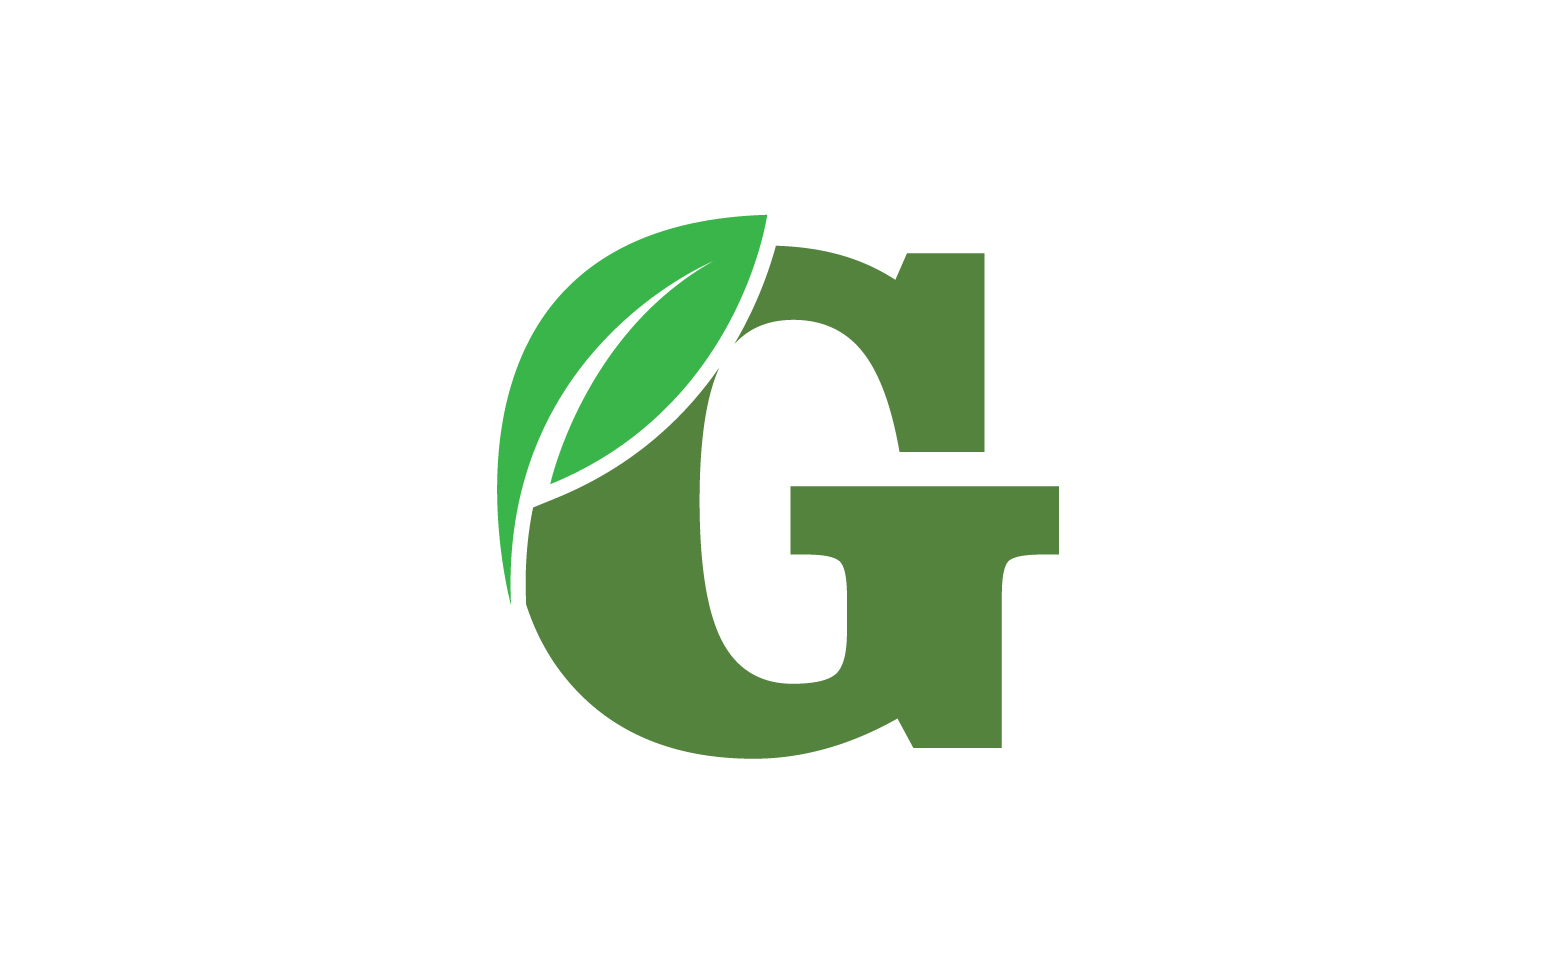 G letter leaf green logo icon version v15